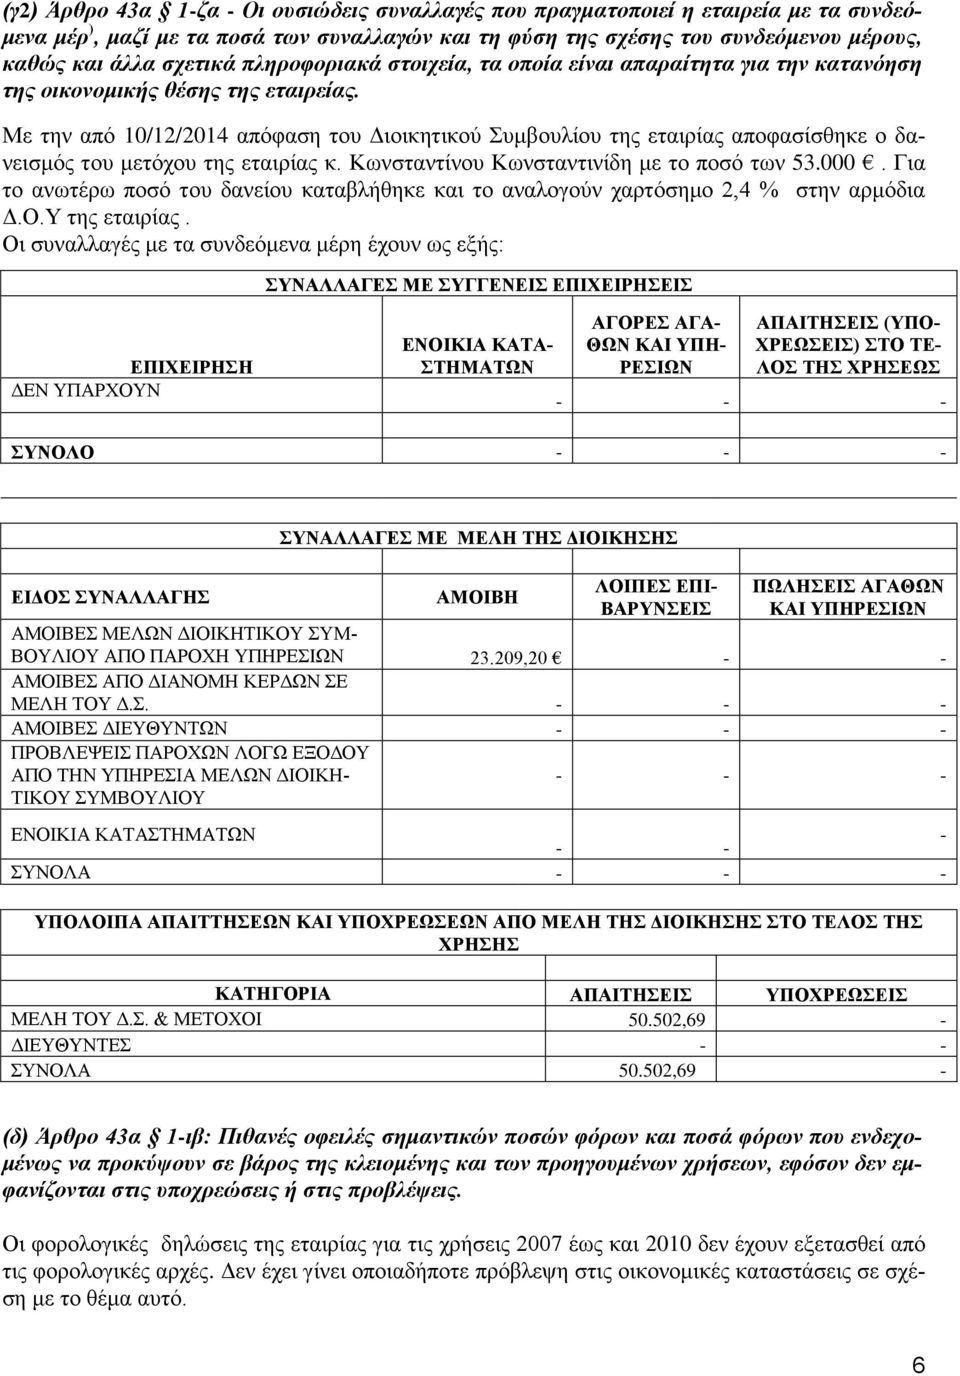 Με την από 10/12/2014 απόφαση του Διοικητικού Συμβουλίου της εταιρίας αποφασίσθηκε ο δανεισμός του μετόχου της εταιρίας κ. Κωνσταντίνου Κωνσταντινίδη με το ποσό των 53.000.